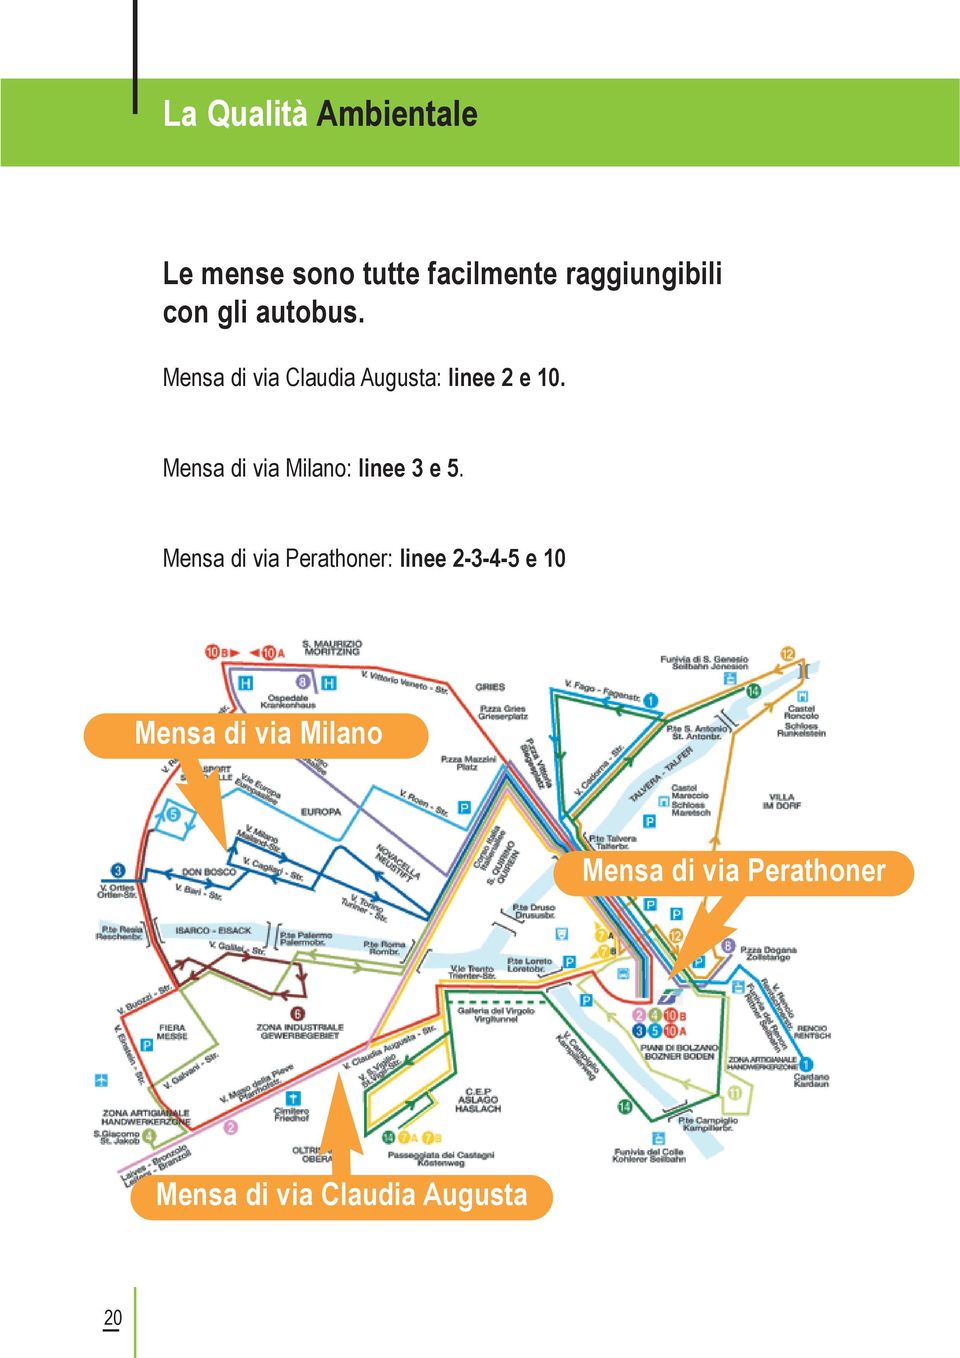 Mensa di via Milano: linee 3 e 5.